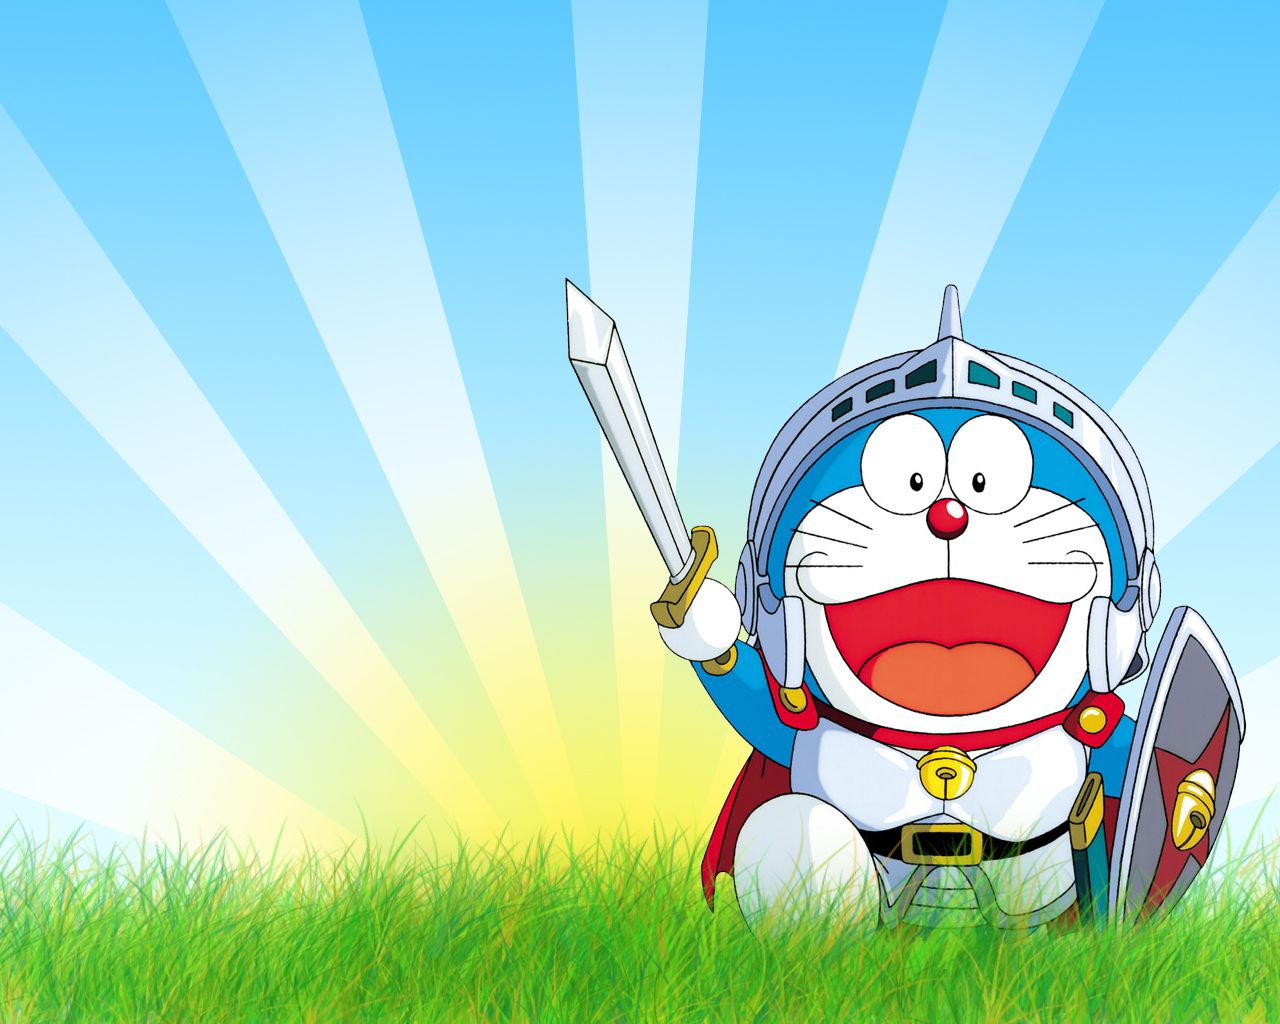 Với hình nền Doraemon, bạn sẽ cảm thấy được sự hồn nhiên và vui vẻ khi nhìn vào chiếc điện thoại của mình. Bạn sẽ hạnh phúc với hình ảnh đáng yêu và tươi sáng này trên màn hình của mình.